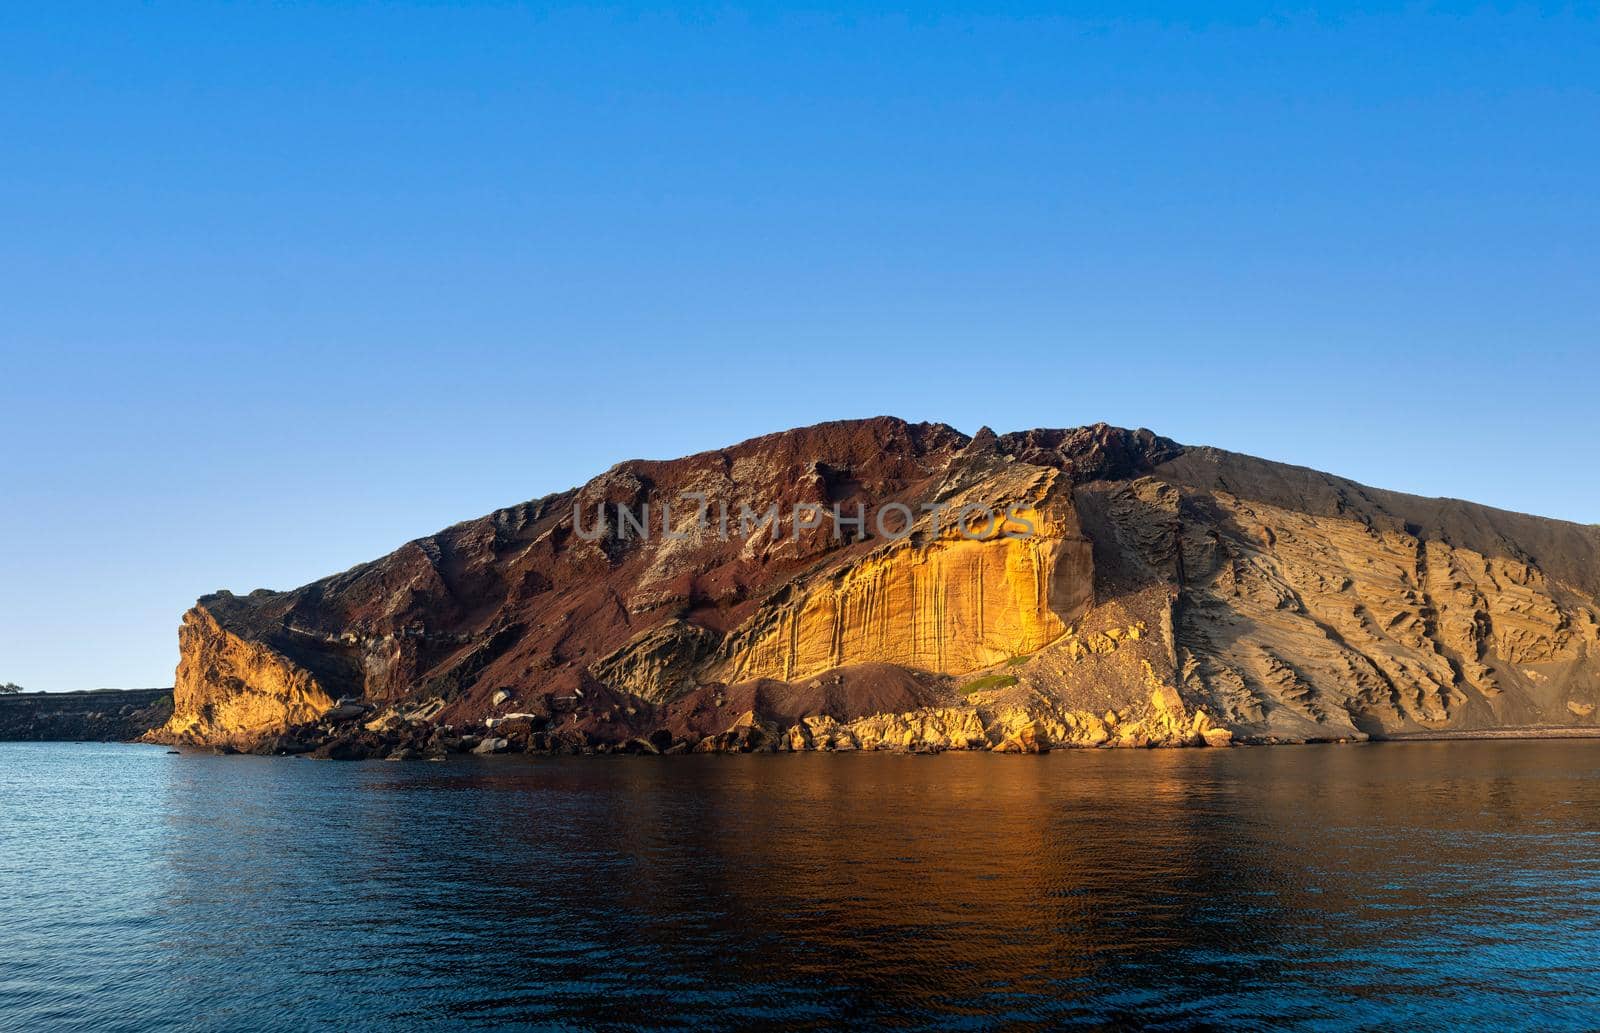 View of the Linosa volcano called Monte Nero in the beach of Cala Pozzolana di Ponente, Sicily